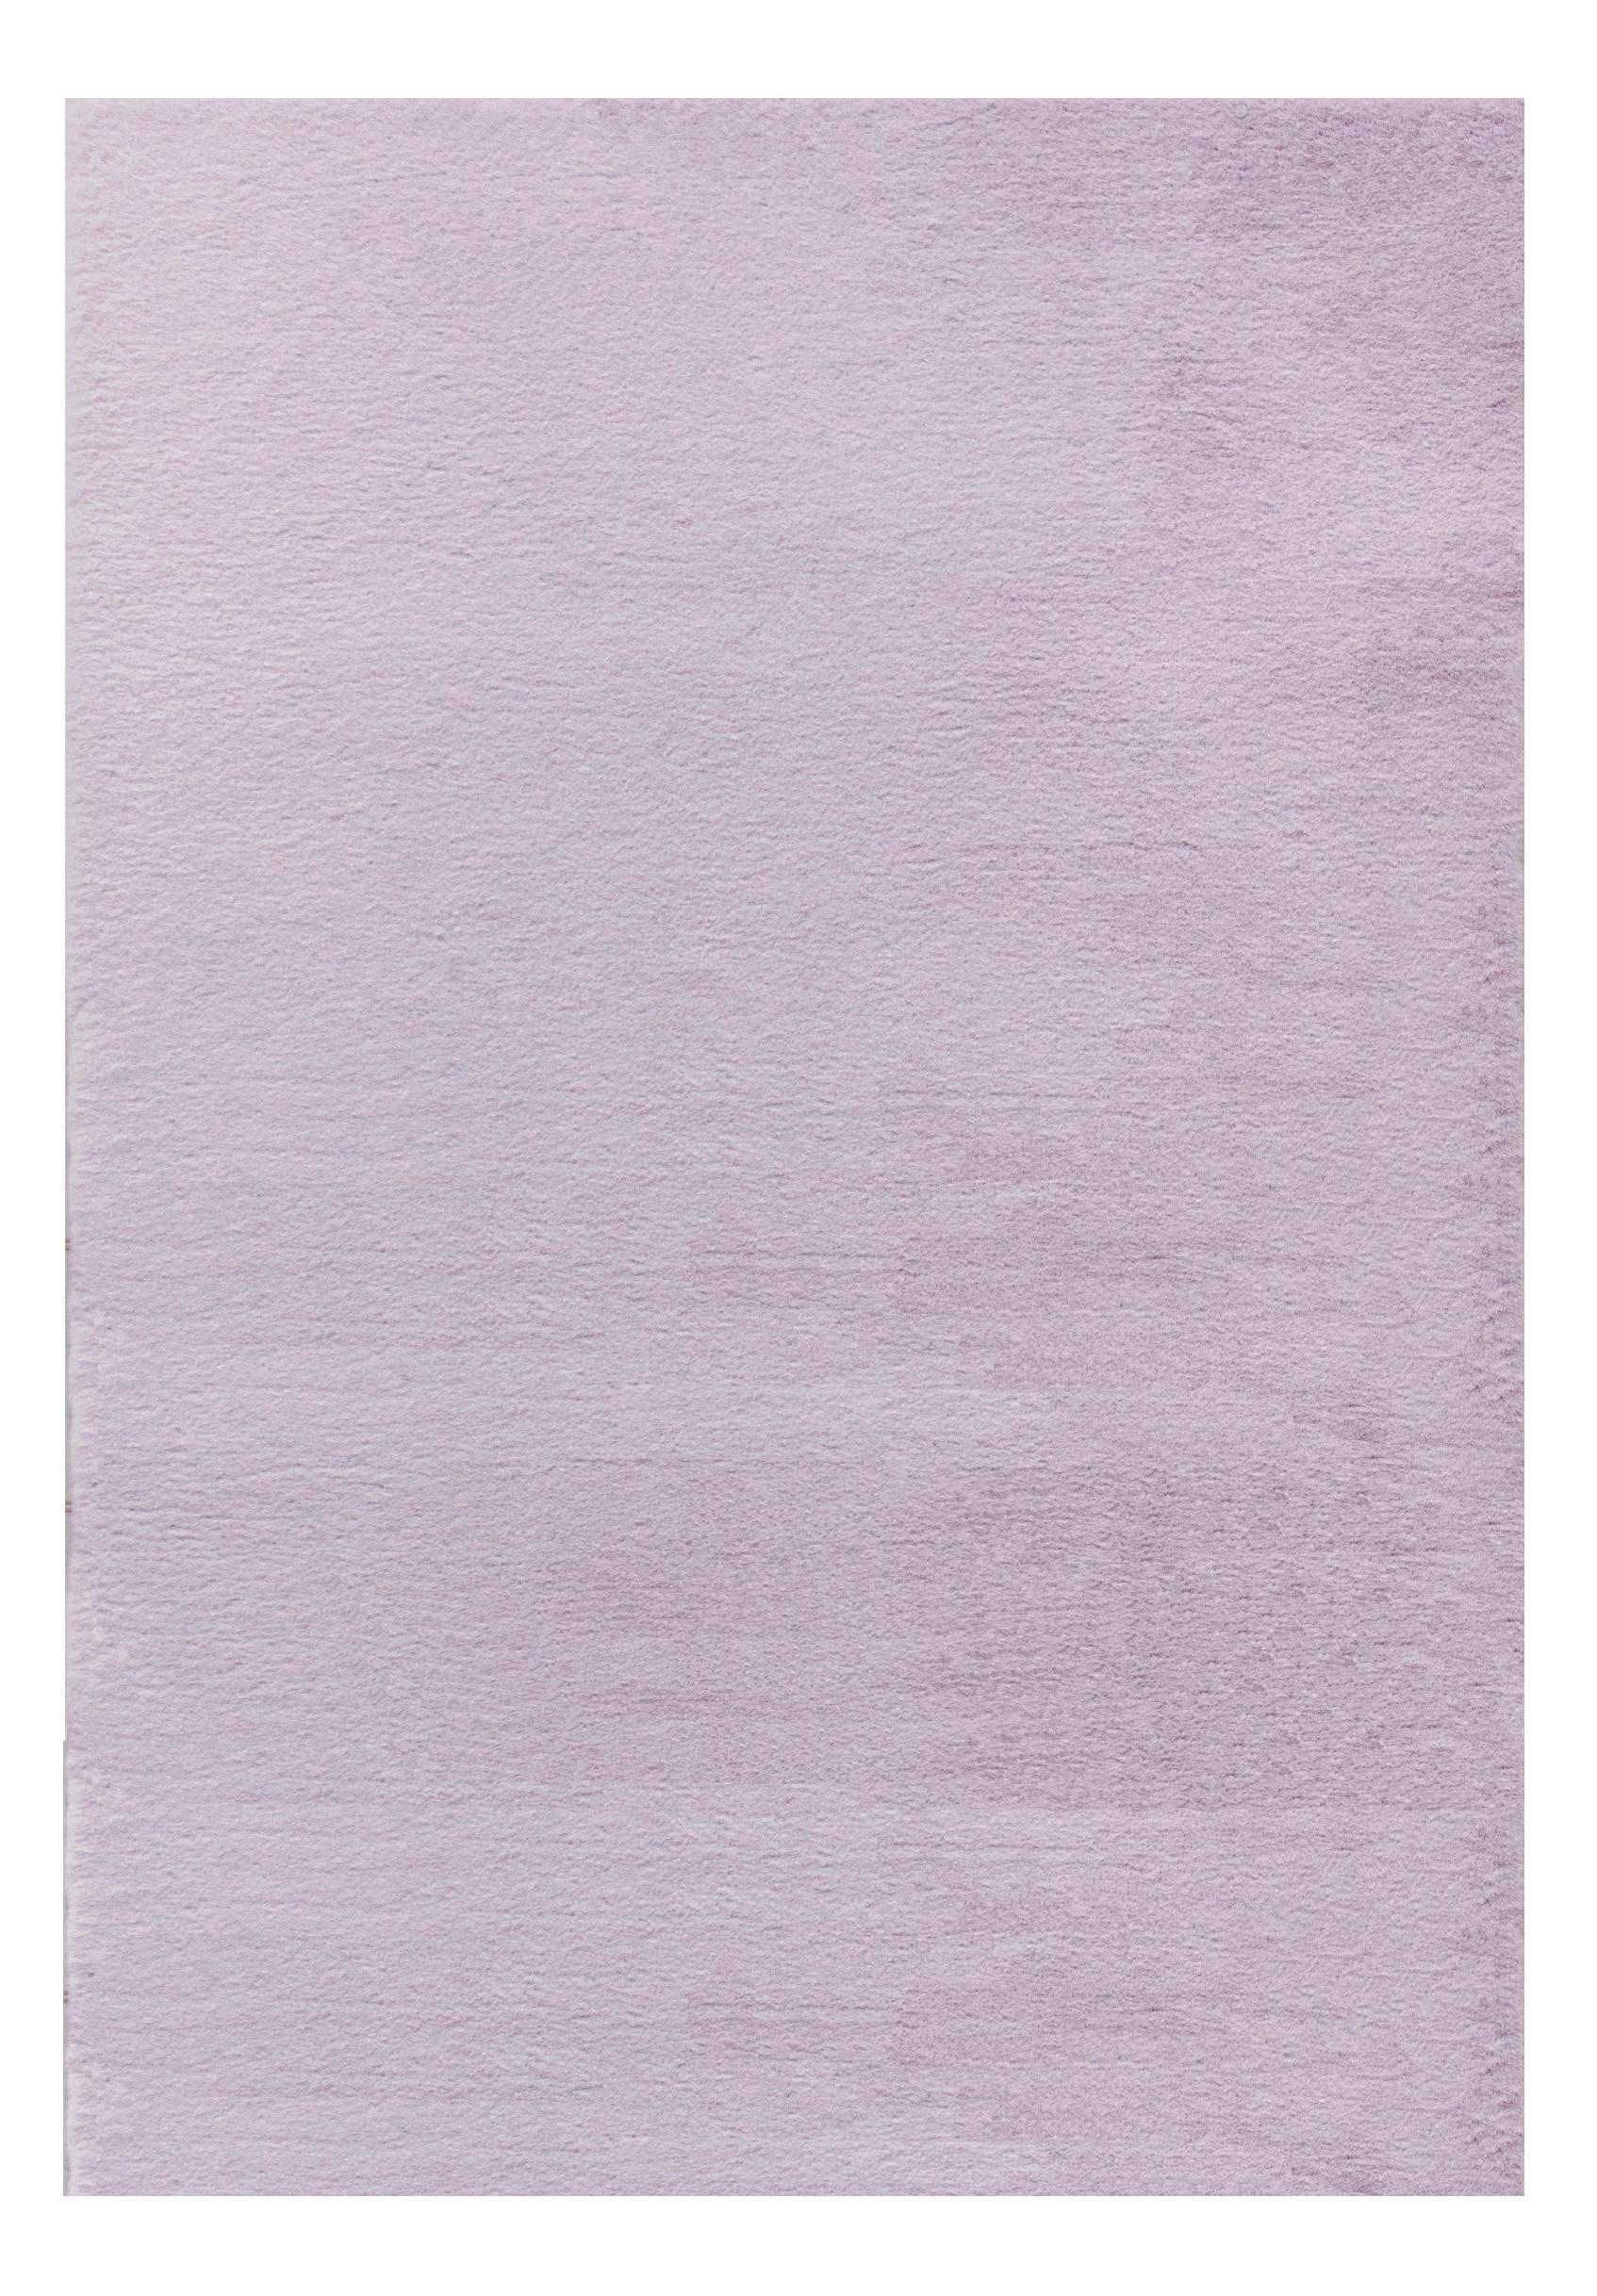 HOSSZÚ SZÁLÚ SZŐNYEG   - rózsaszín, Trend, textil (70/130cm) - Novel